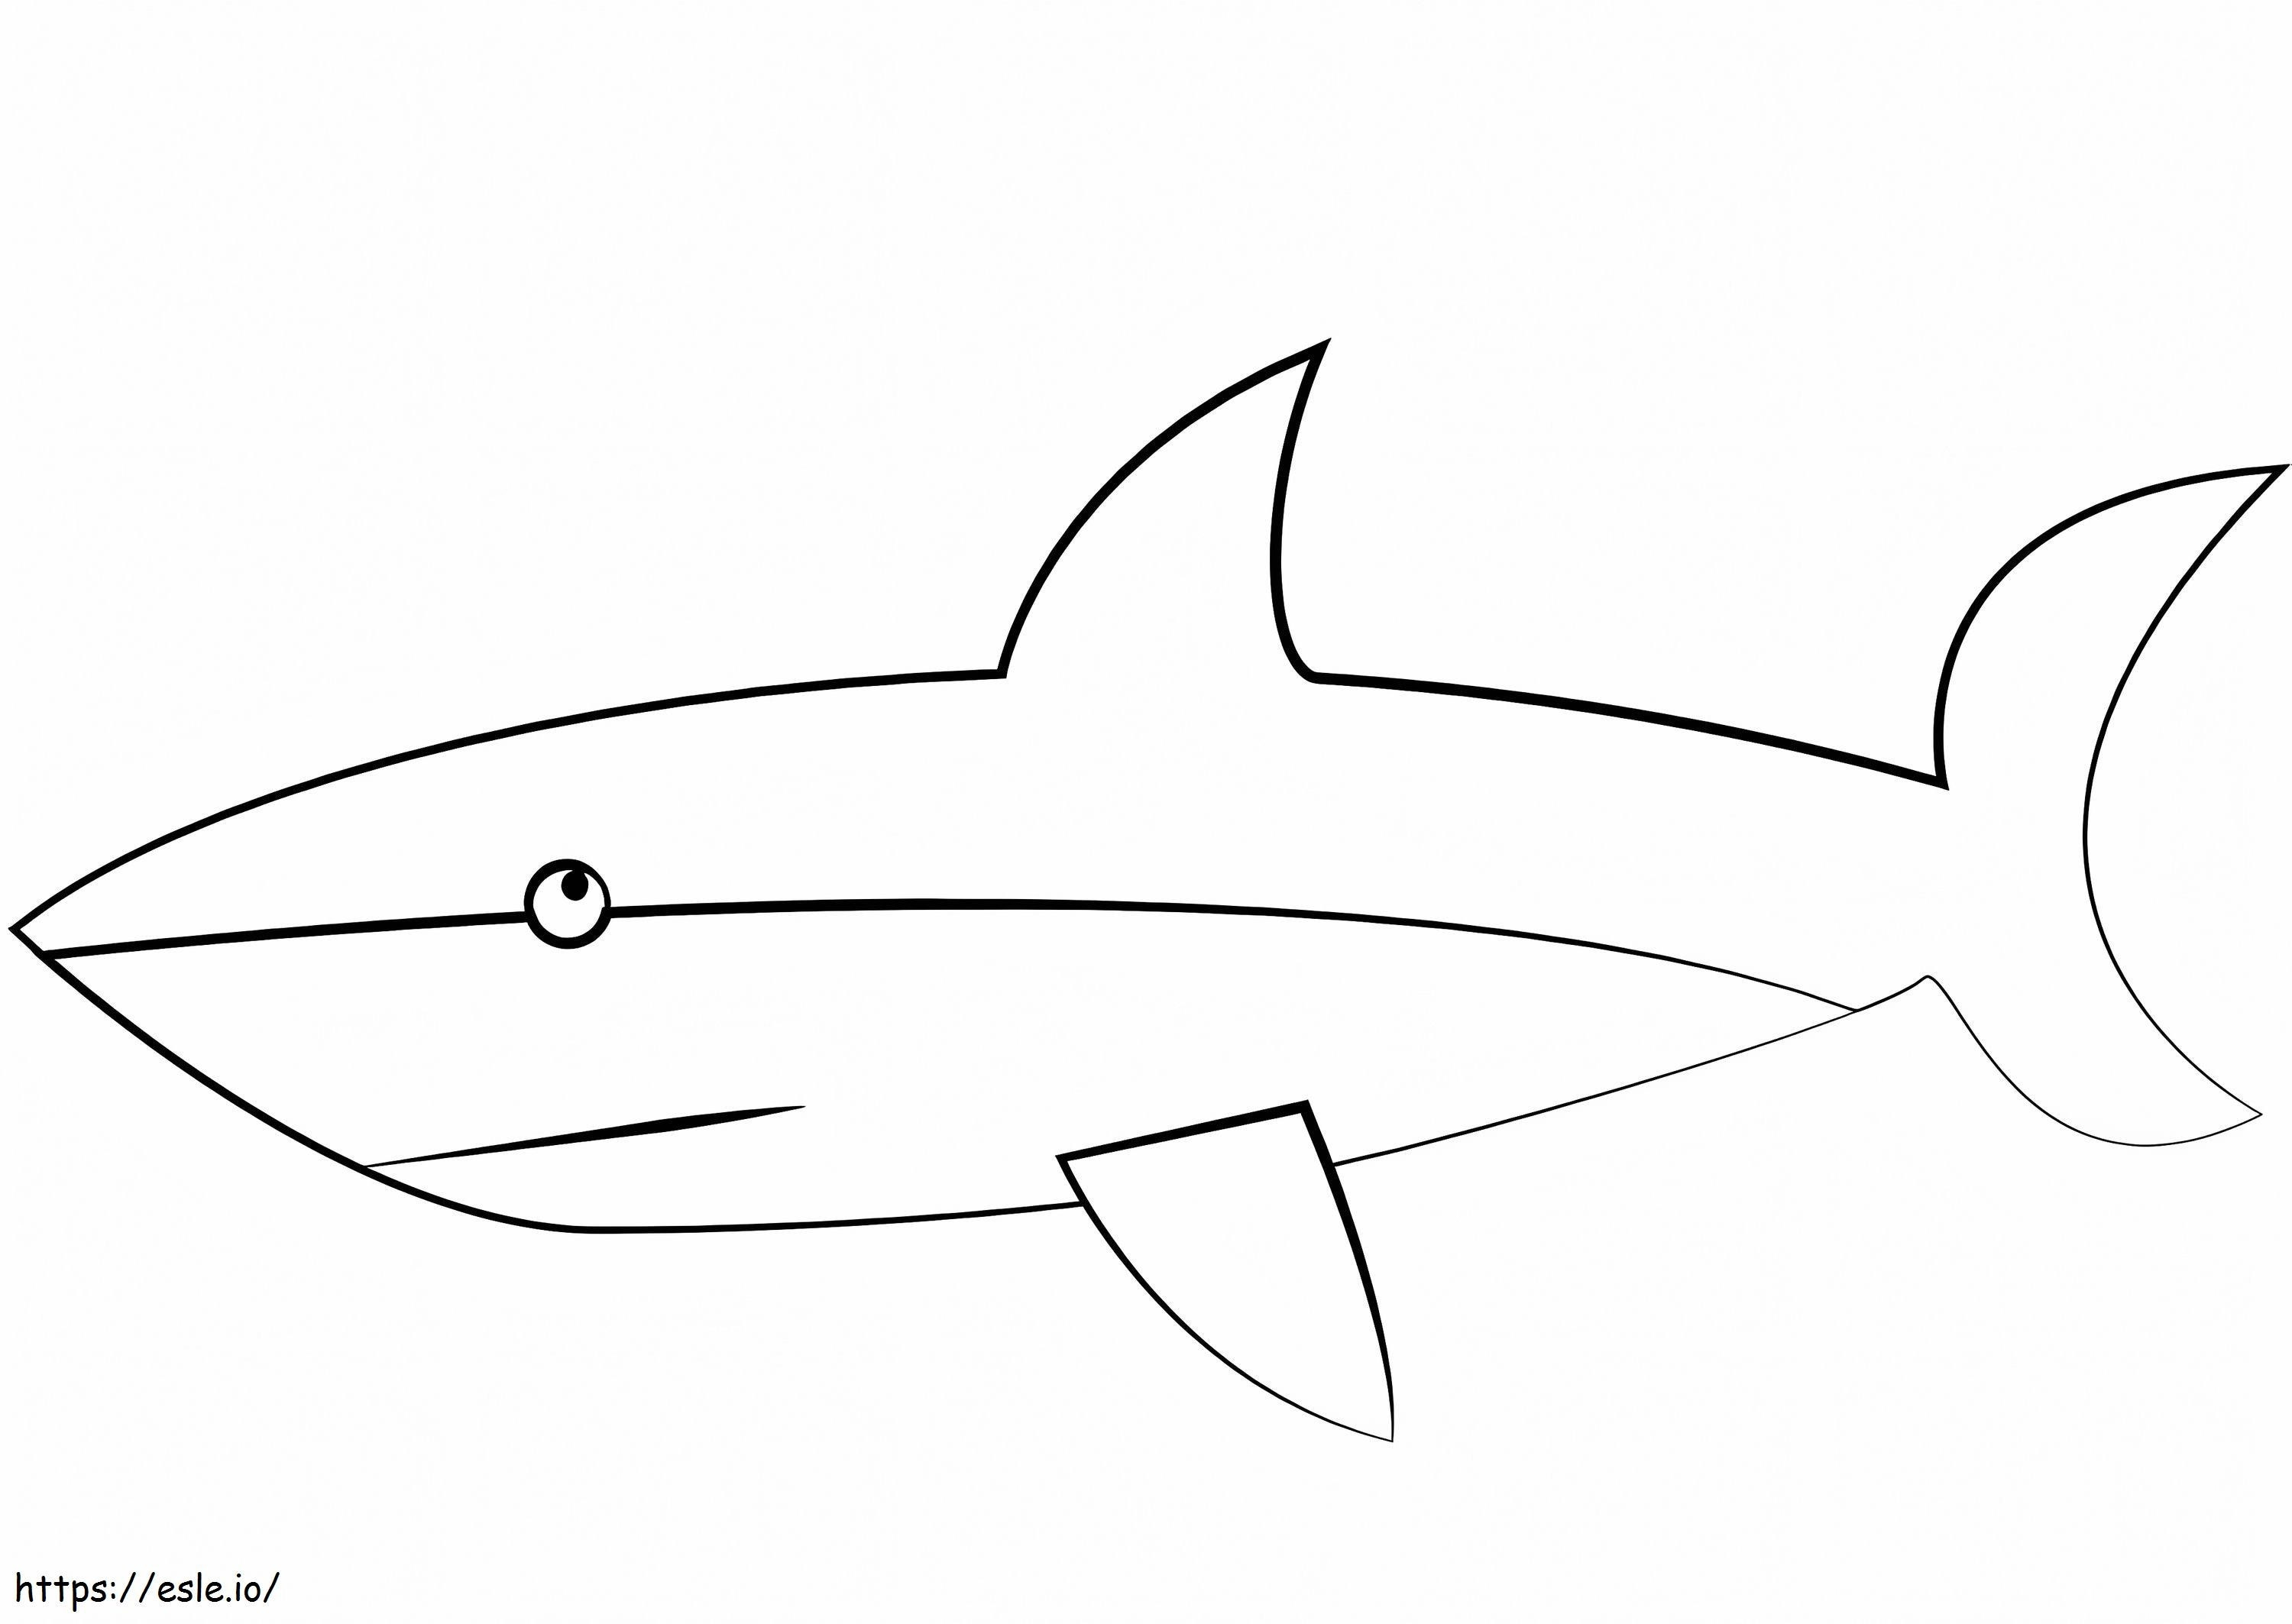 Coloriage Requin simple à imprimer dessin